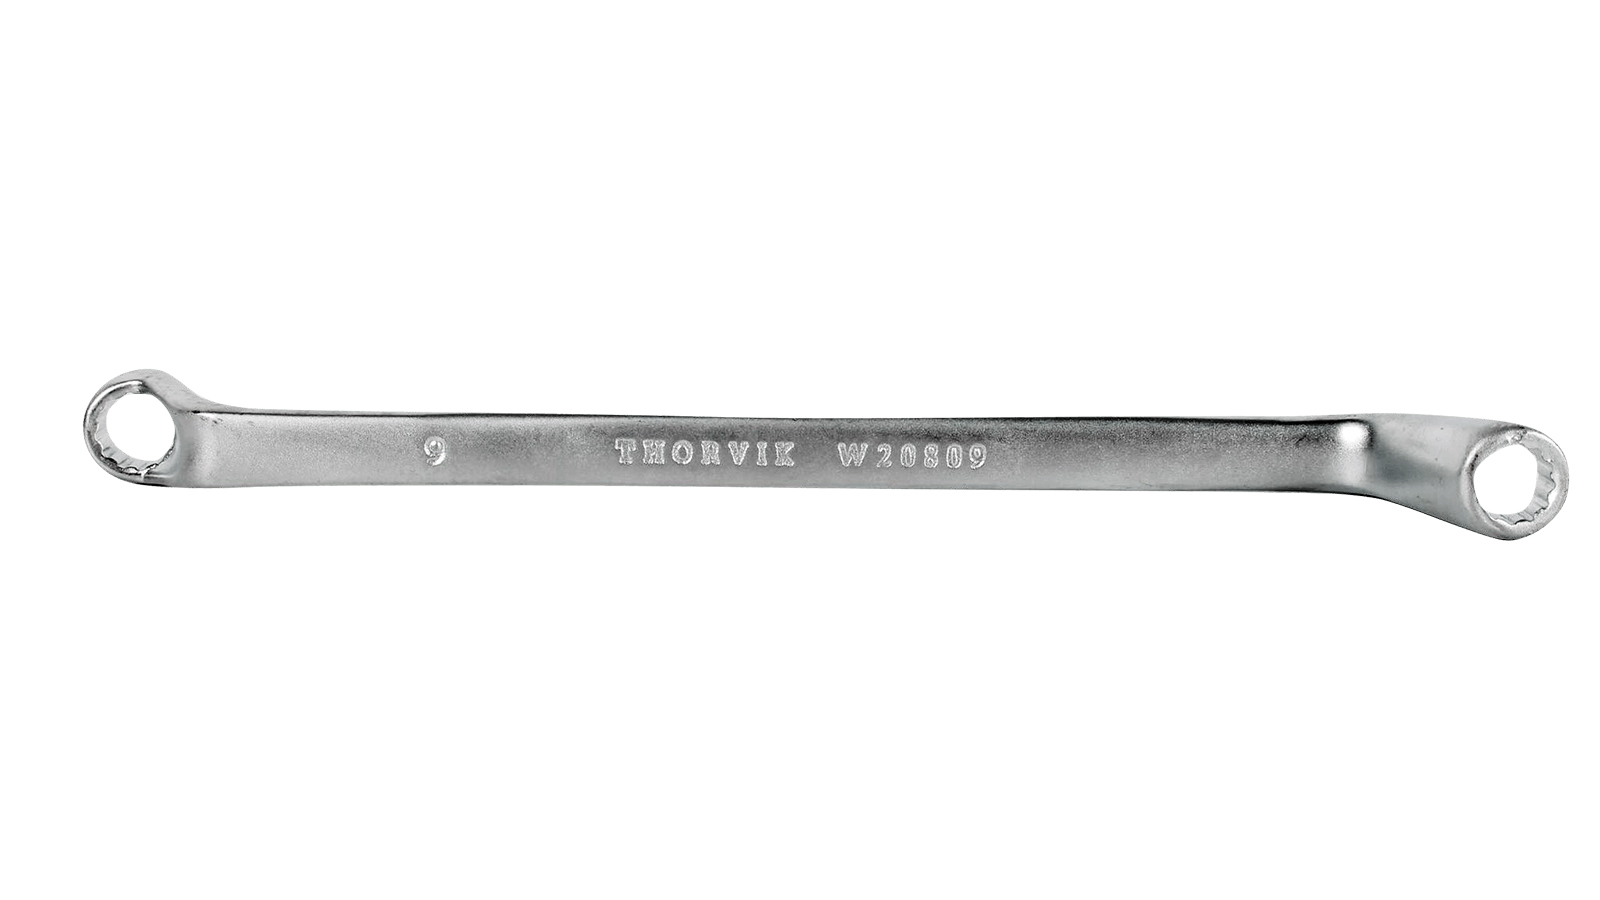 Ключ Накидной  8 Х 9 Thorvik Серии Arc THORVIK арт. W20809